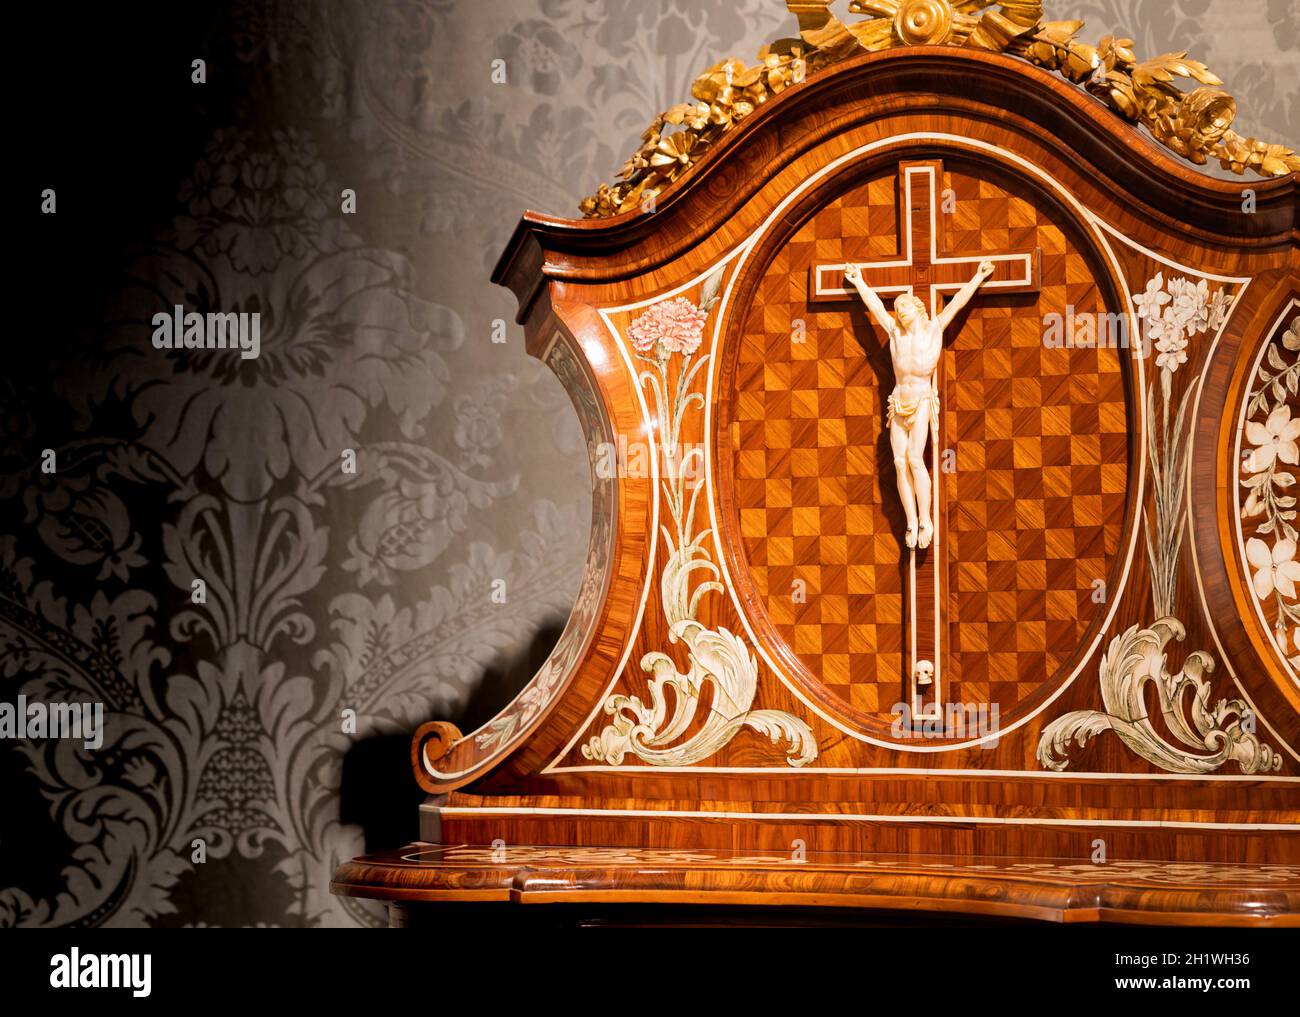 TURIN, ITALIEN - CA. MAI 2021: Altes Kruzifix aus Holz und Elfenbein (1750). Jesus Christus Symbol der Auferstehung und des Lebens nach dem Tod. Stockfoto